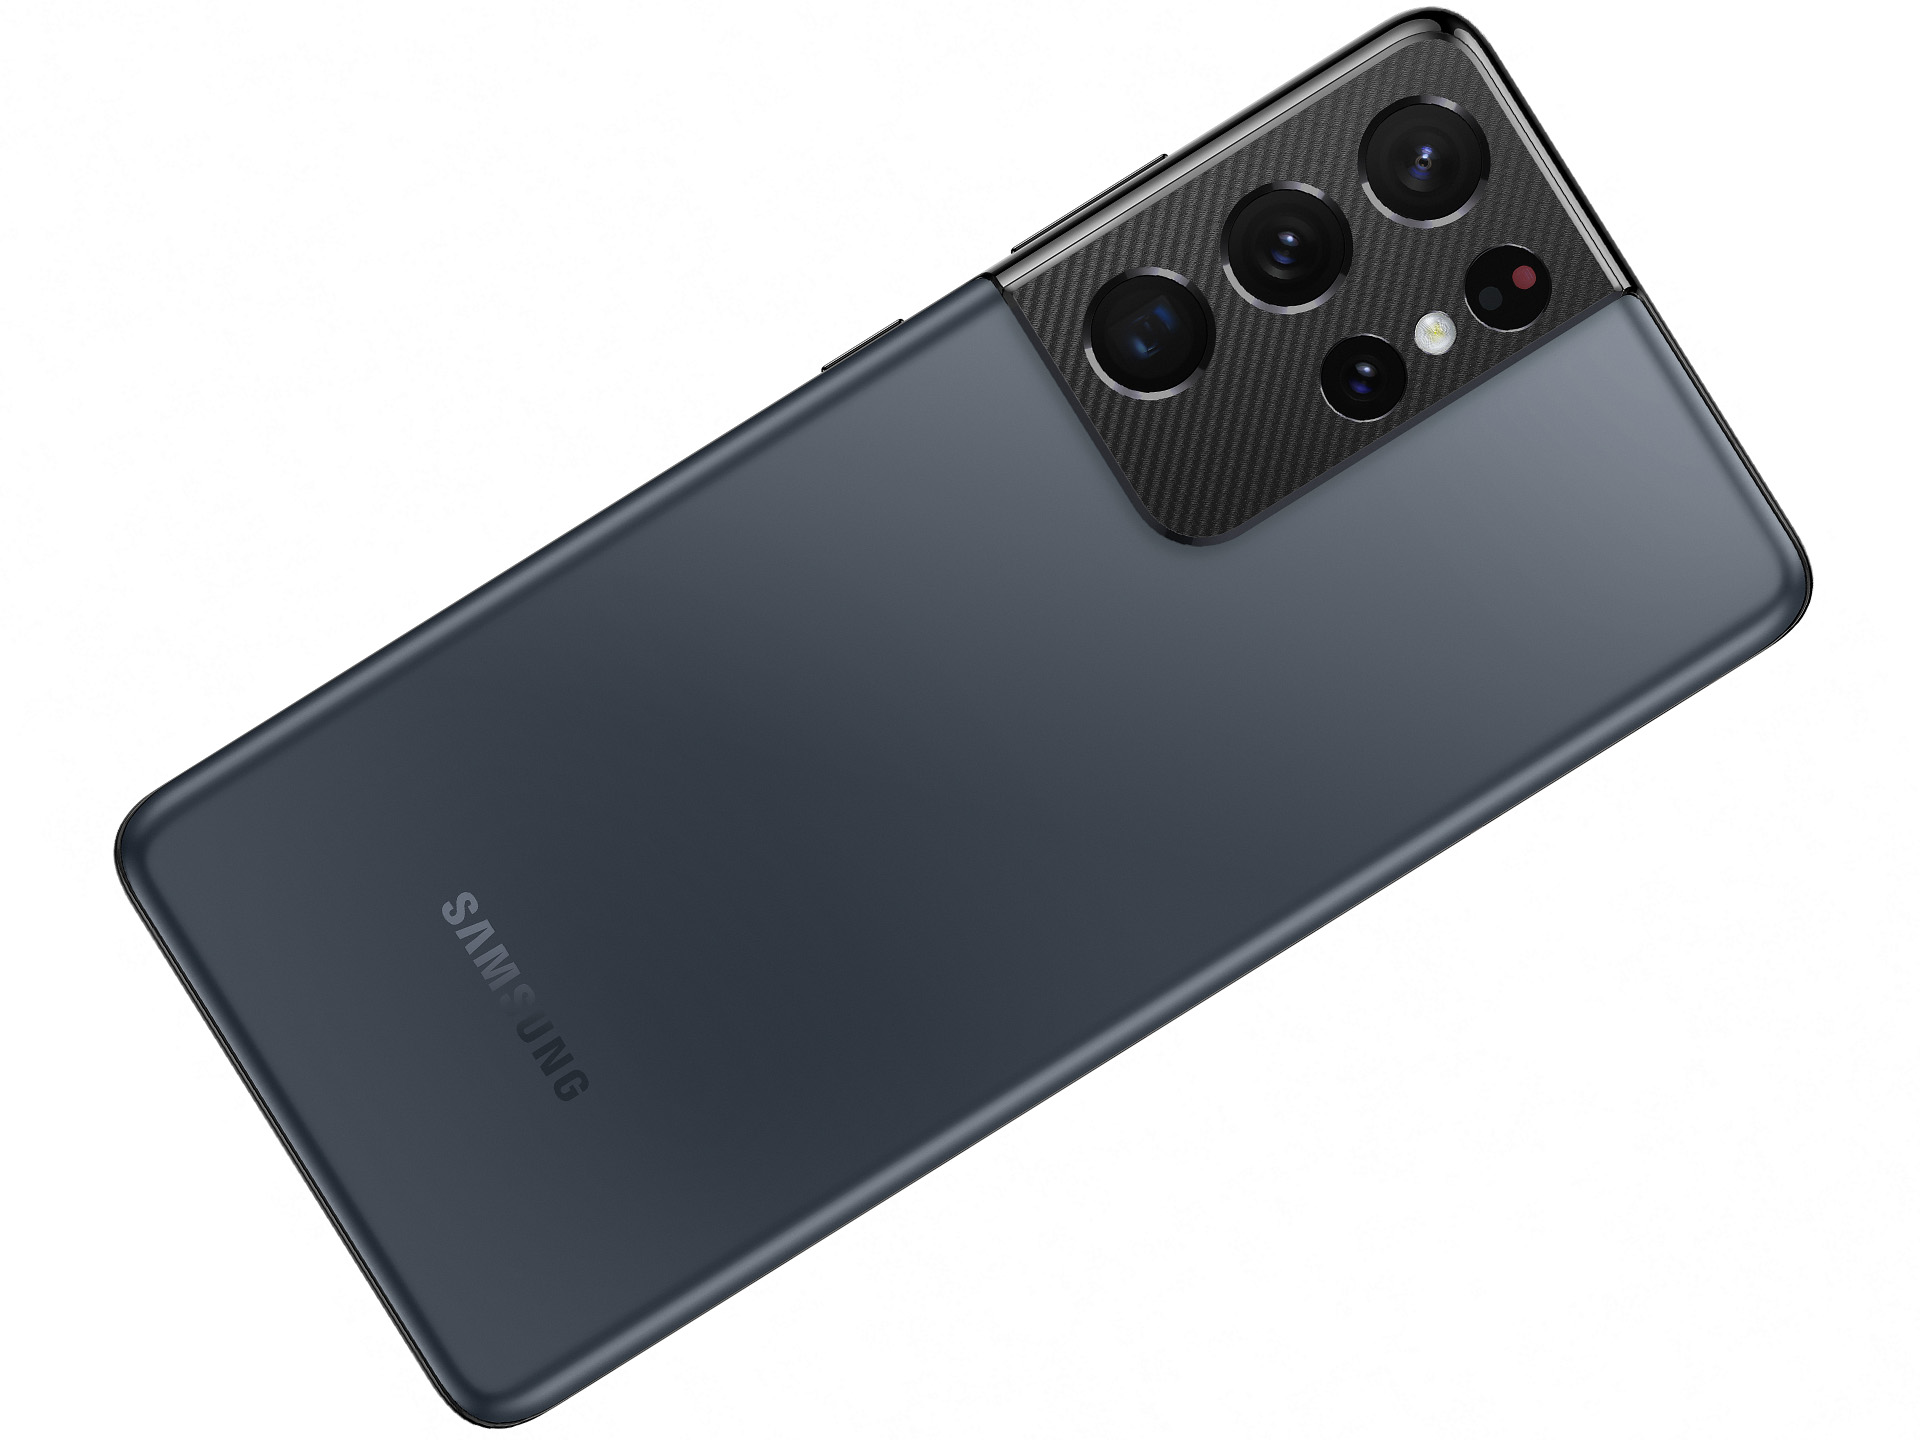 Samsung Galaxy S21 Ultra External Reviews